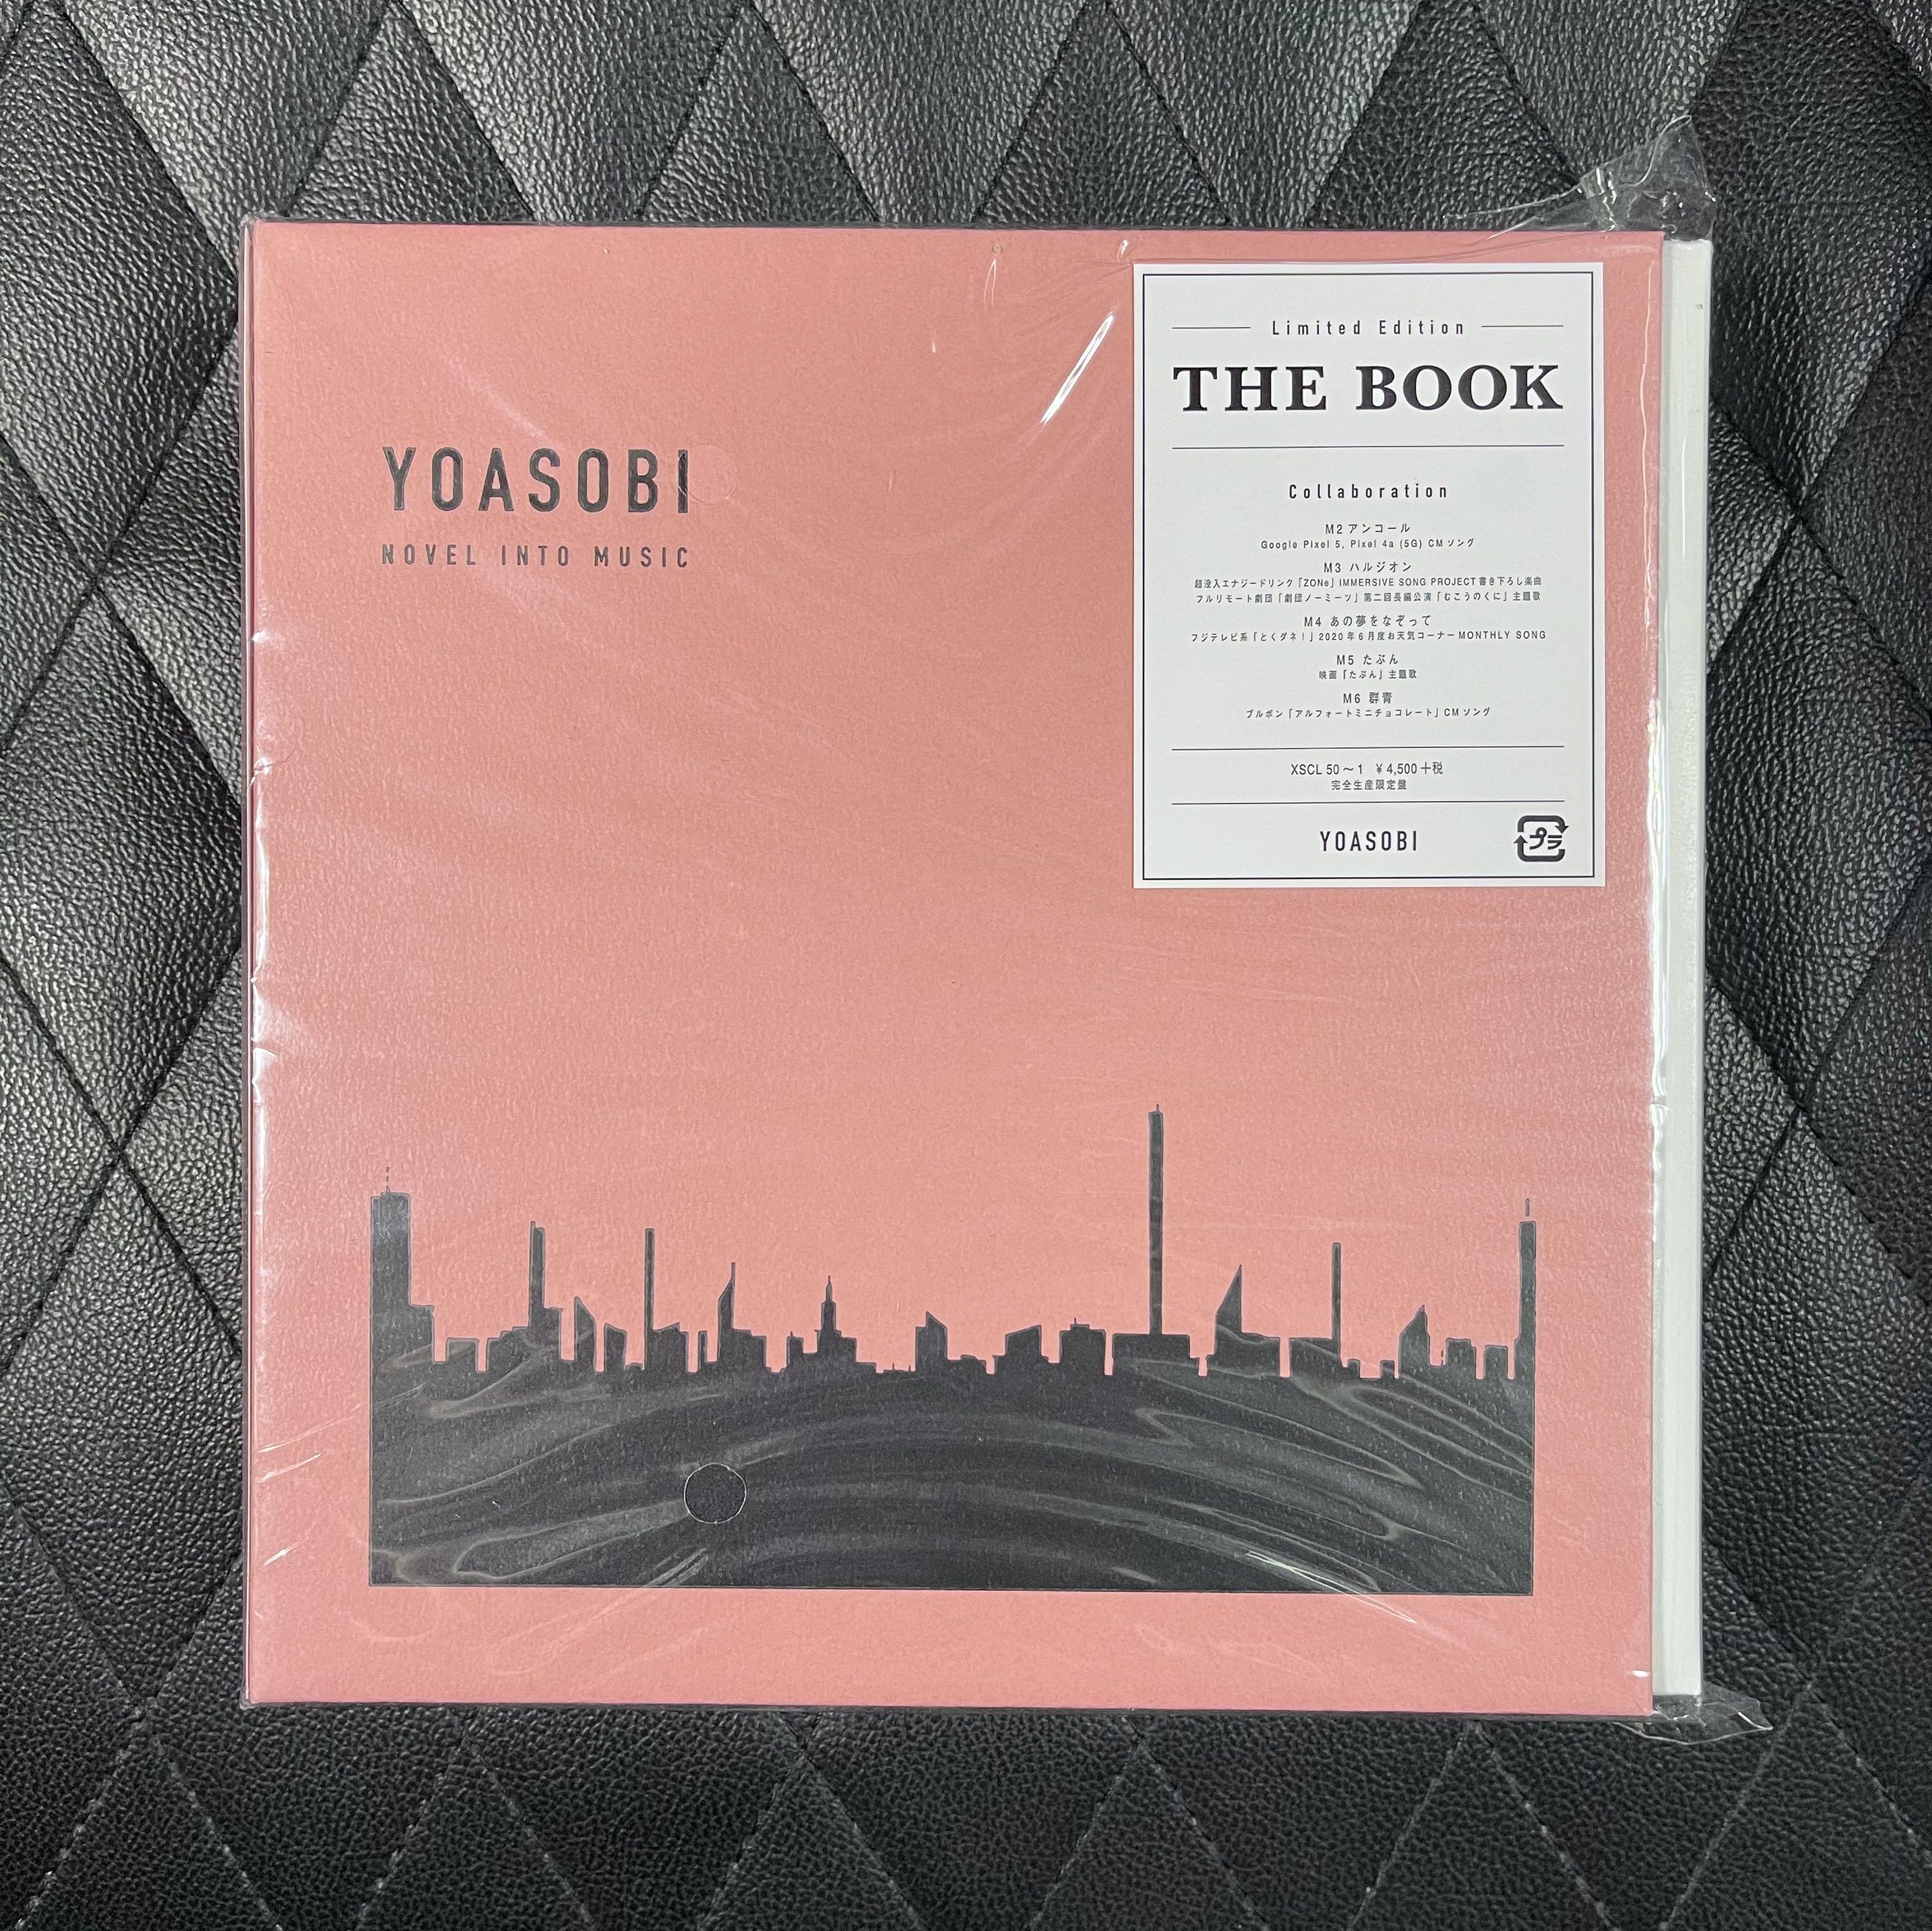 THE BOOK 完全生産限定盤CD + 付属品 (特典なし) YOASOBI www